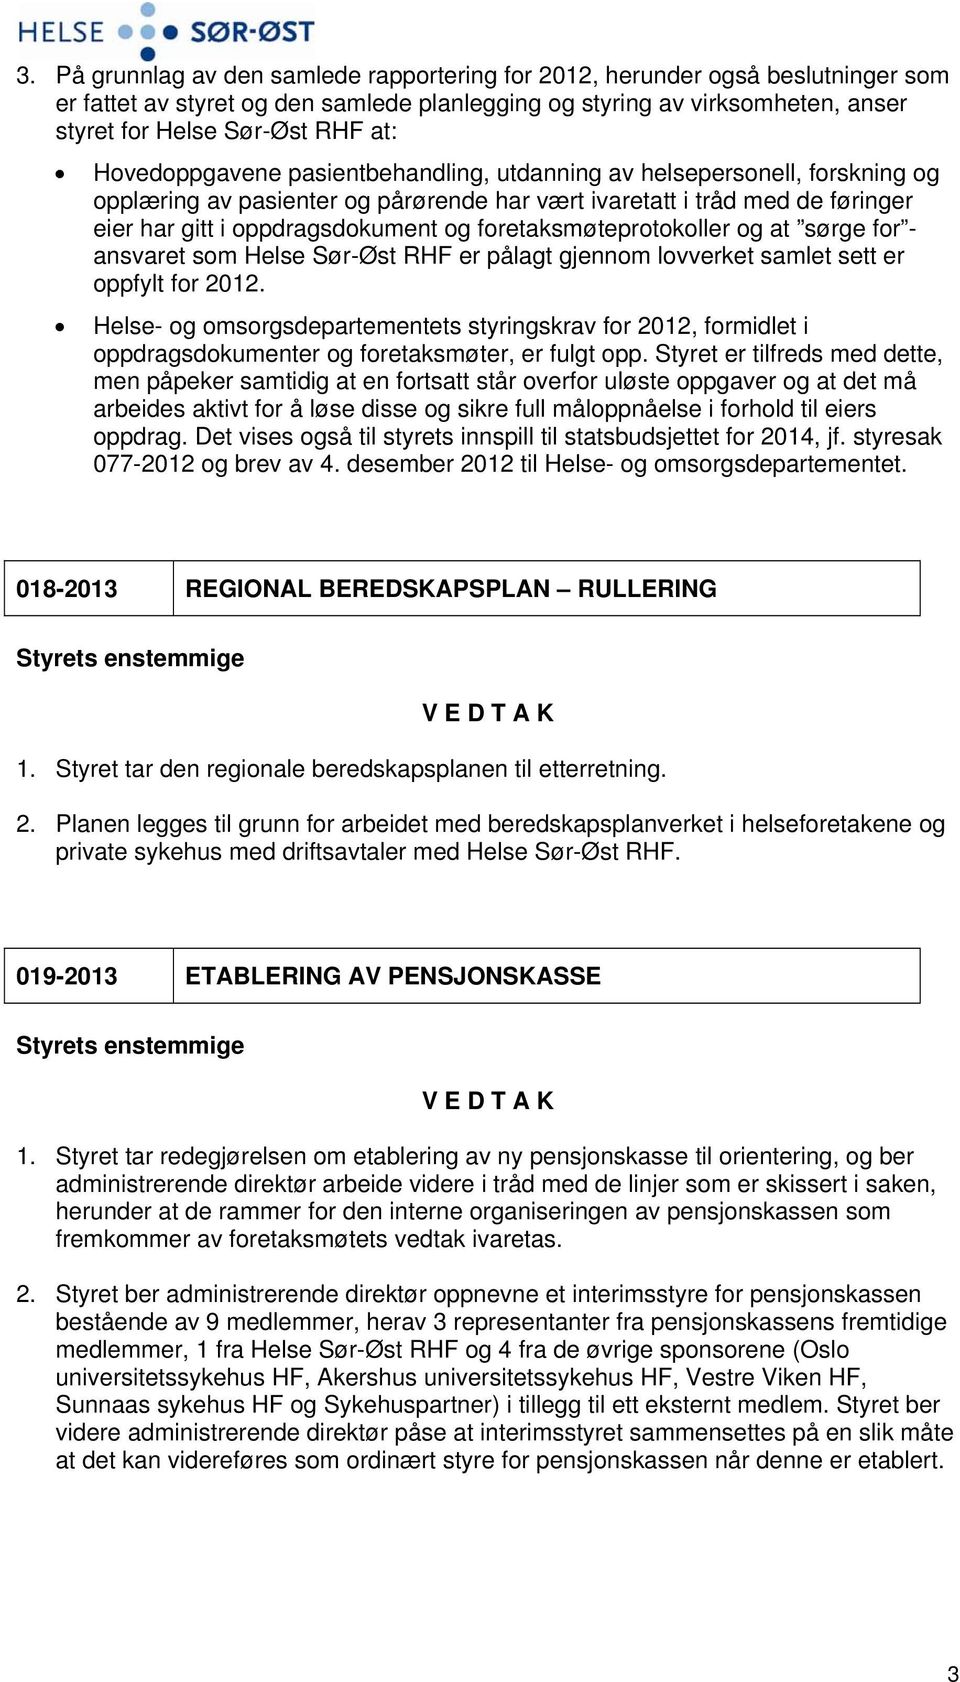 foretaksmøteprotokoller og at sørge for - ansvaret som Helse Sør-Øst RHF er pålagt gjennom lovverket samlet sett er oppfylt for 2012.